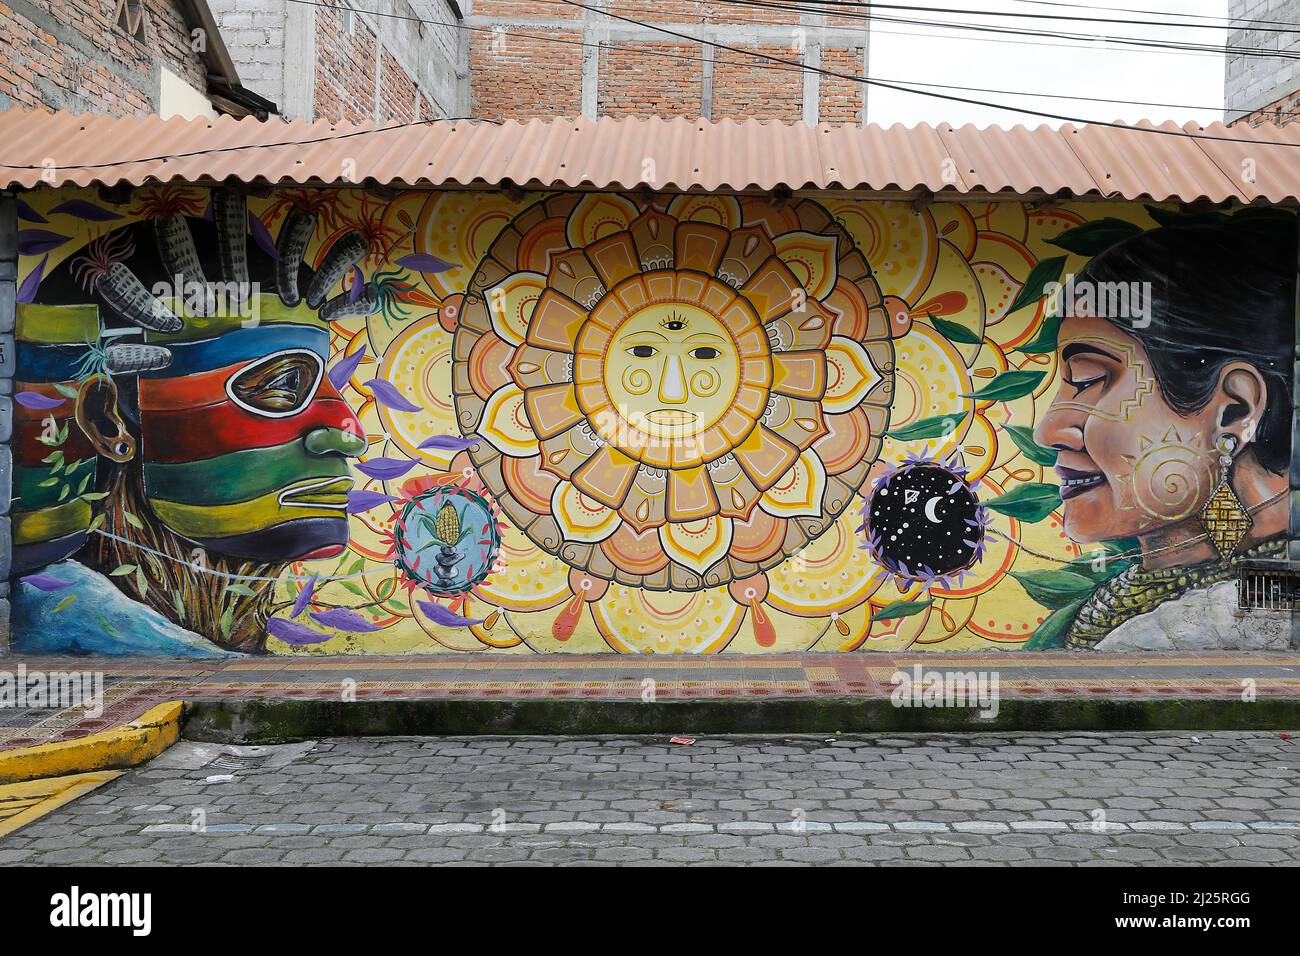 Mural painting in Otavalo, Ecuador Stock Photo